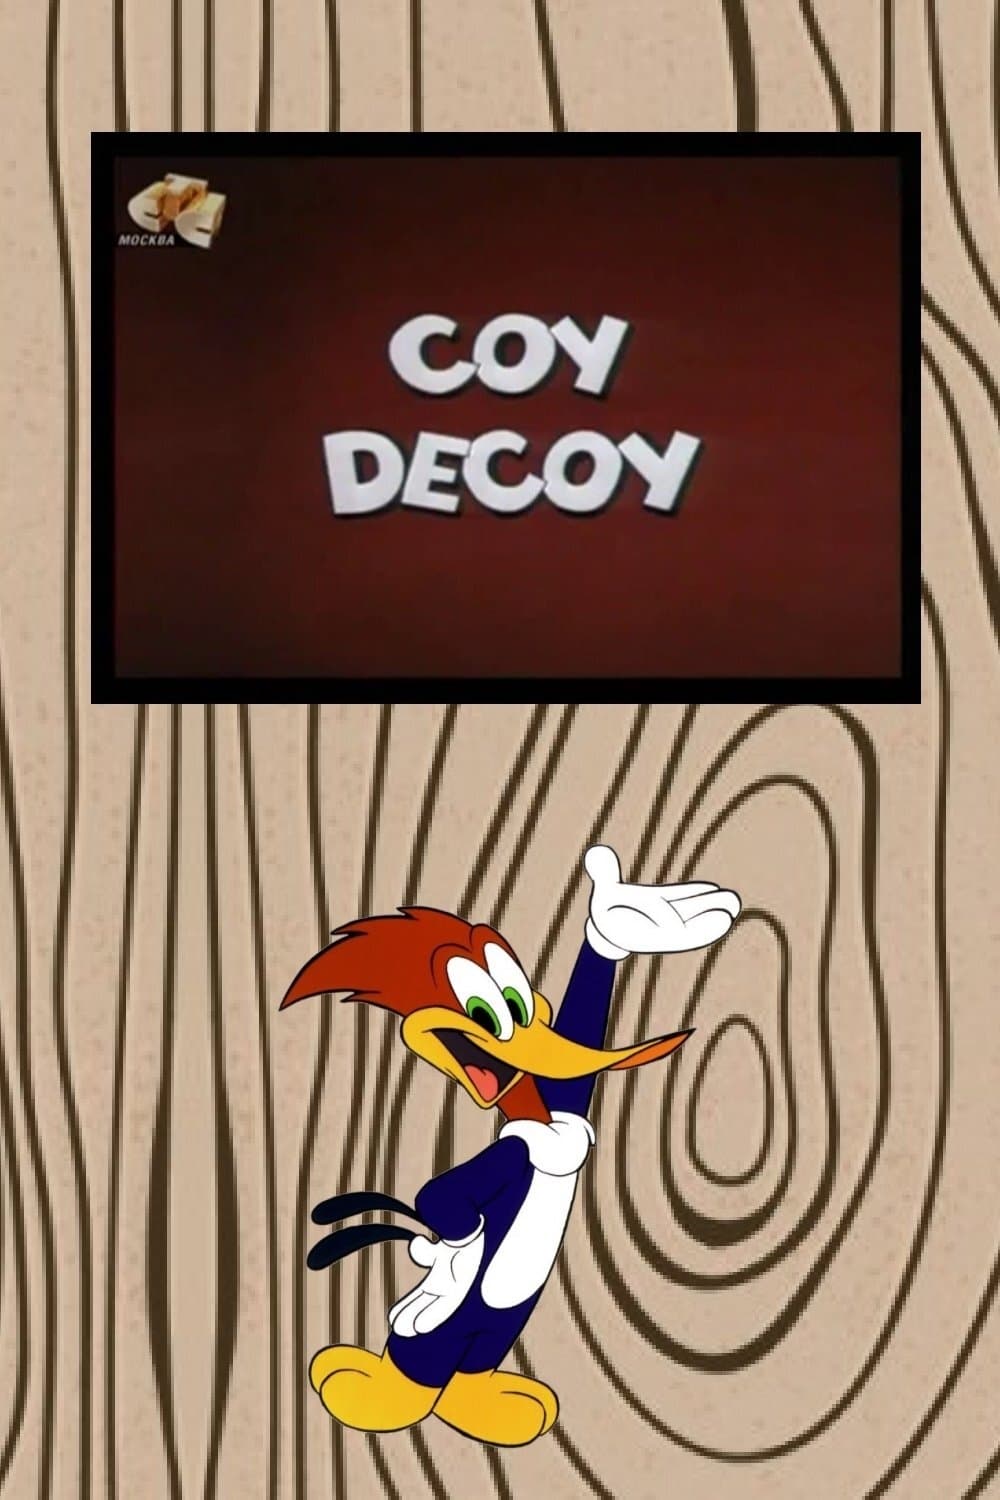 Coy Decoy